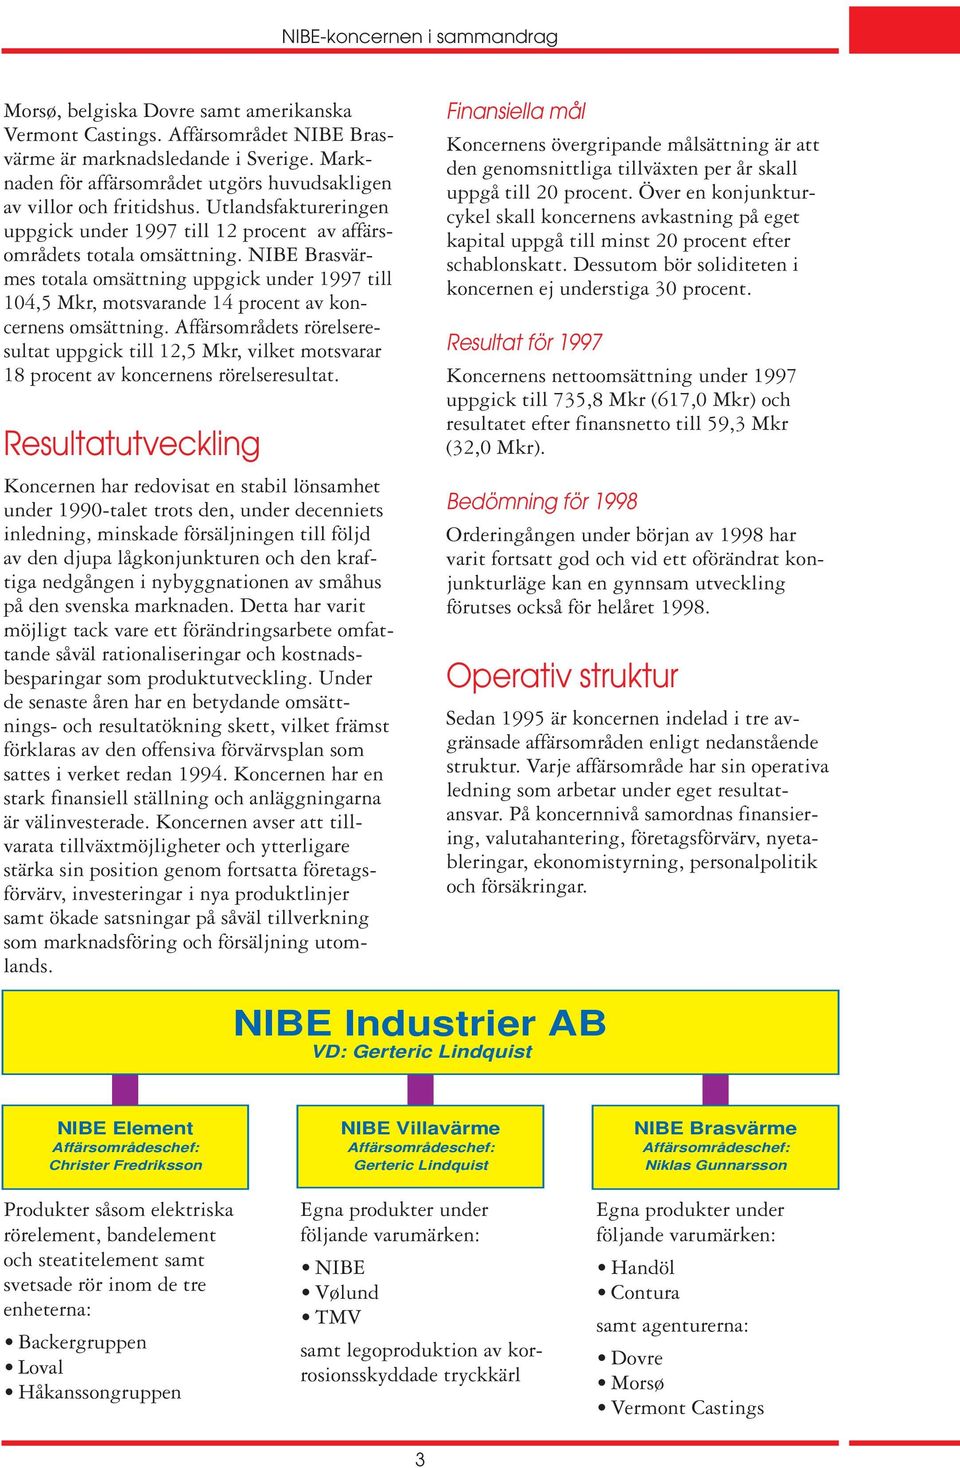 NIBE Brasvärmes totala omsättning uppgick under 1997 till 104,5 Mkr, motsvarande 14 procent av koncernens omsättning.